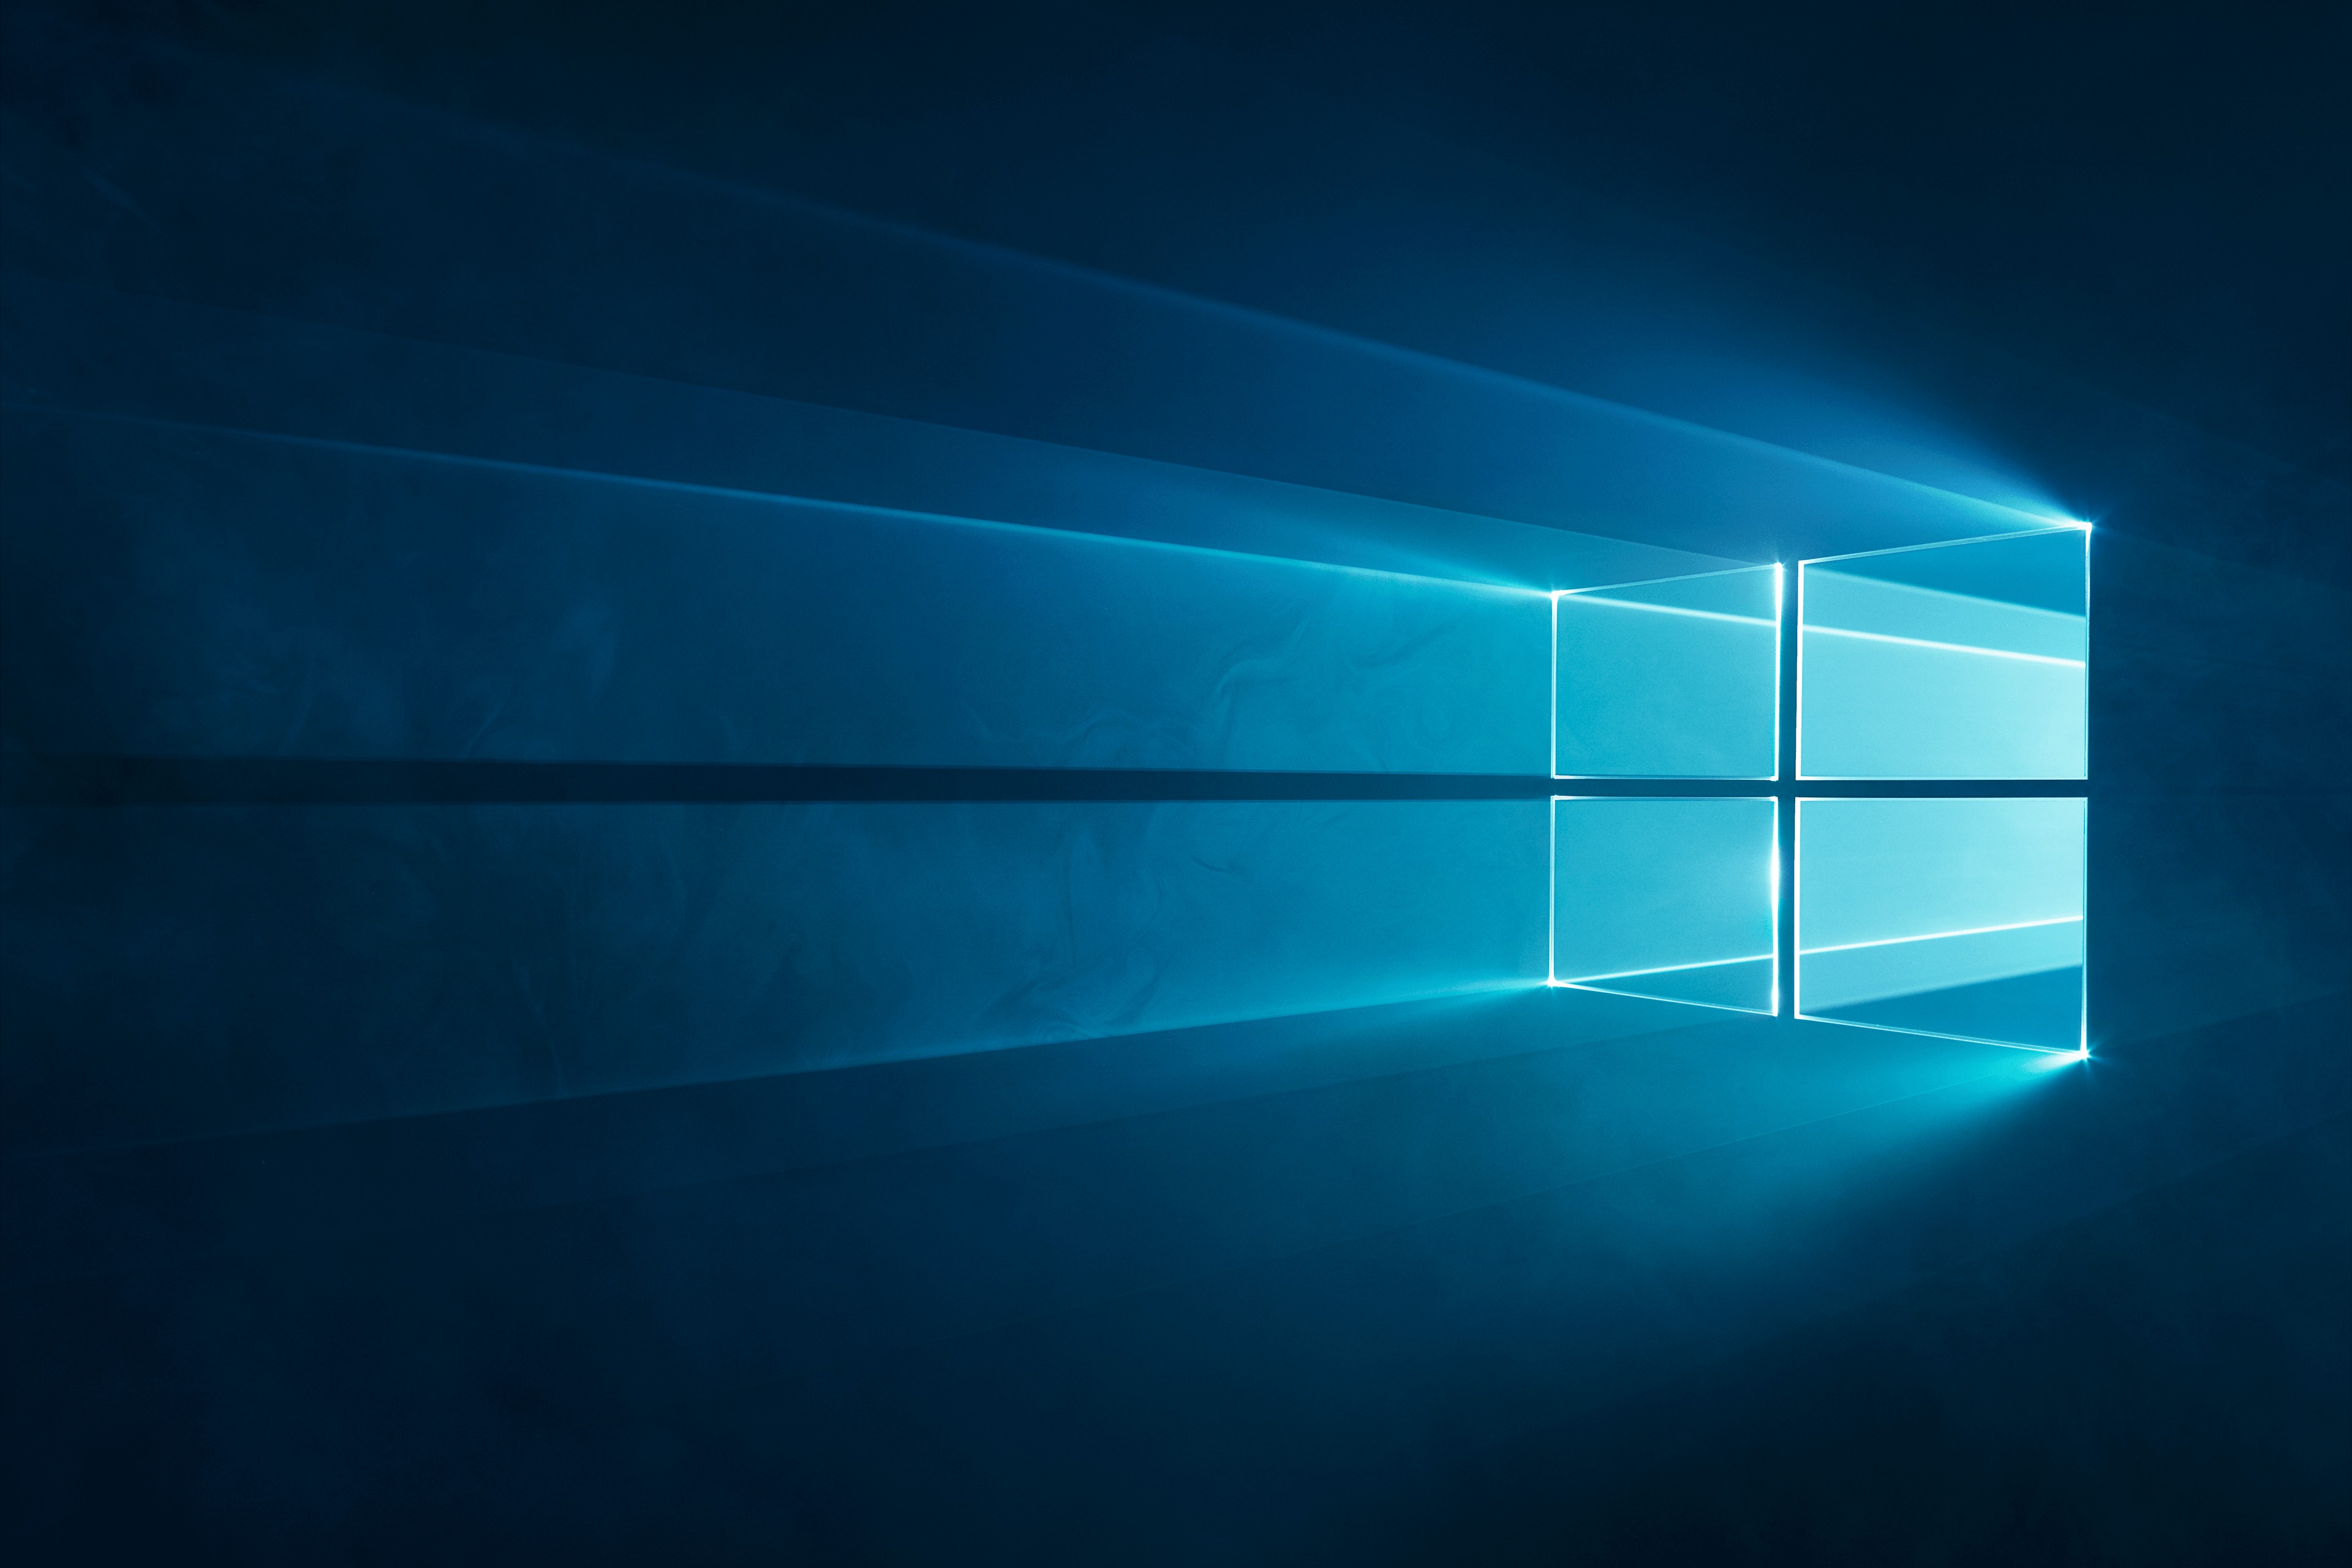 Microsoft đã cải tiến Chế độ tối trên Windows 10 để tránh gây mỏi mắt, tăng độ chuyên nghiệp cho các ứng dụng hỗ trợ chế độ tối. Cải tiến này sẽ mang đến cho bạn một trải nghiệm tốt hơn khi sử dụng máy tính vào ban đêm.